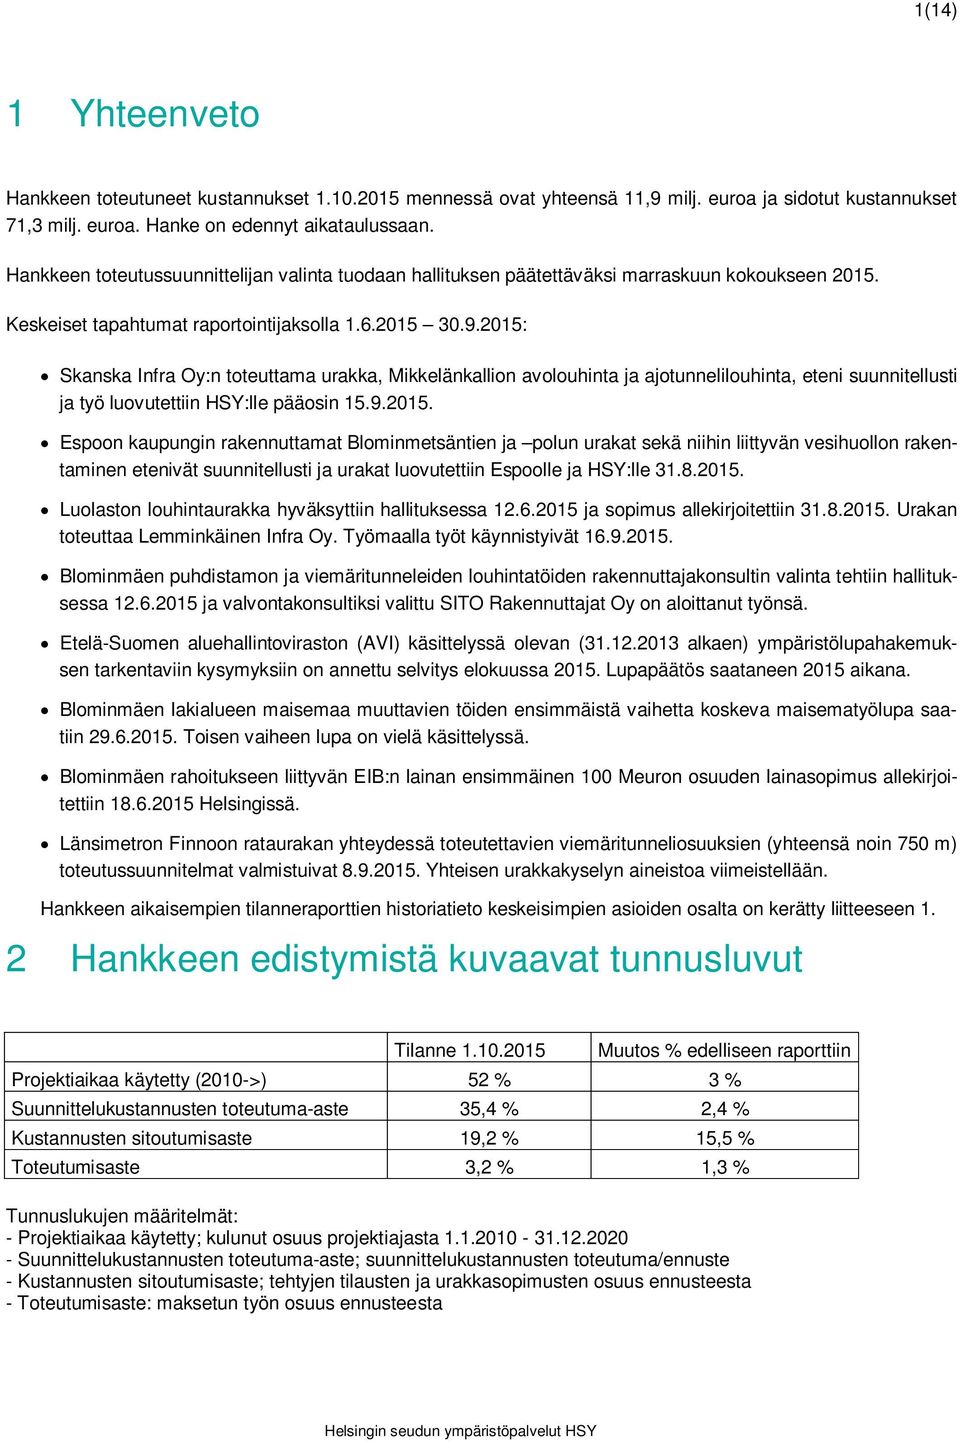 2015: Skanska Infra Oy:n toteuttama urakka, Mikkelänkallion avolouhinta ja ajotunnelilouhinta, eteni suunnitellusti ja työ luovutettiin HSY:lle pääosin 15.9.2015. Espoon kaupungin rakennuttamat Blominmetsäntien ja polun urakat sekä niihin liittyvän vesihuollon rakentaminen etenivät suunnitellusti ja urakat luovutettiin Espoolle ja HSY:lle 31.